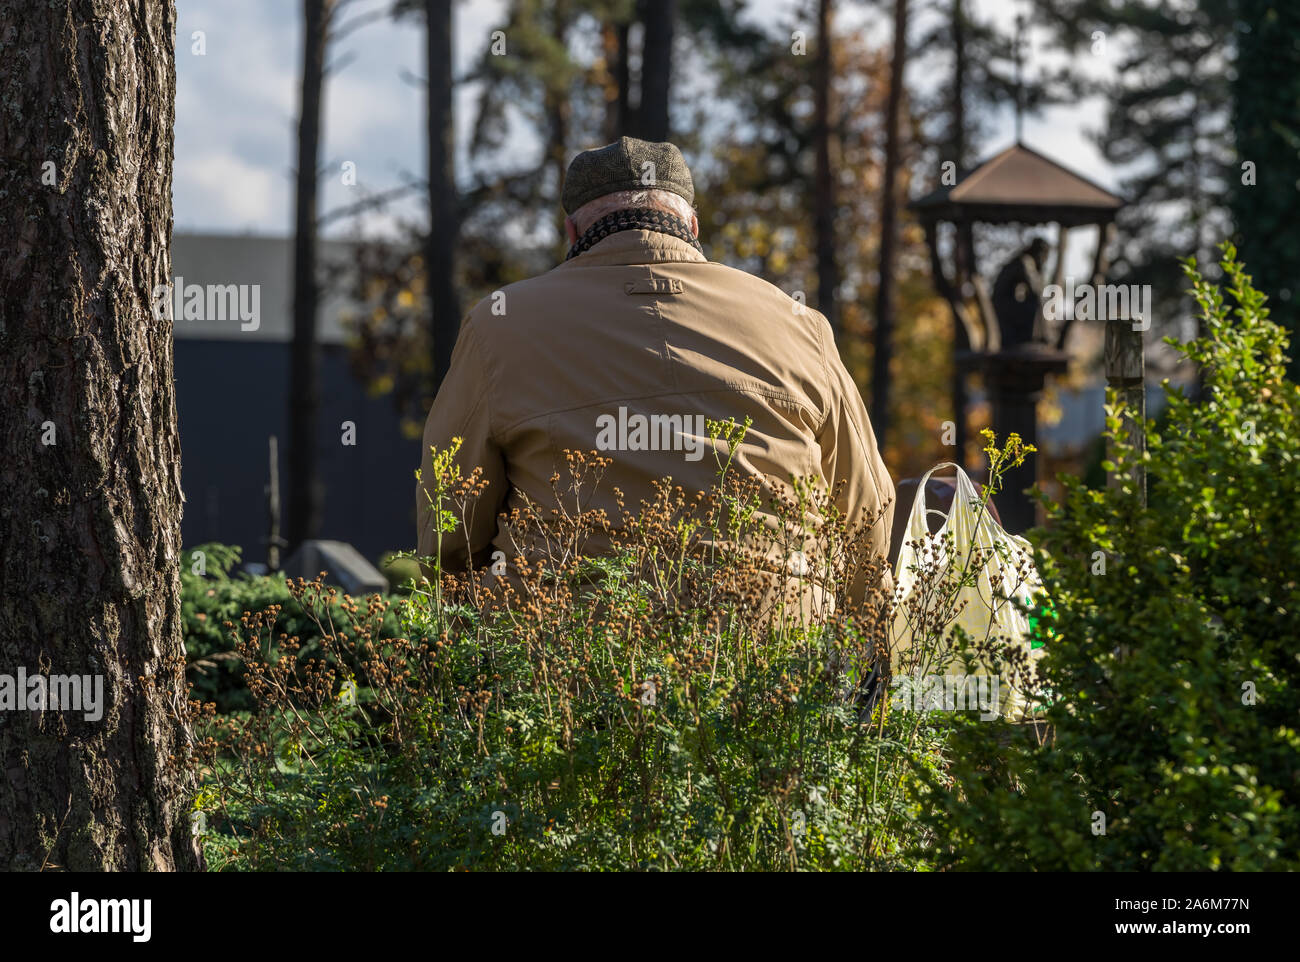 Un viejo hombre gris en una capa ligera y hat llora por su fallecimiento tumba en el cementerio de la caída en un día soleado. Una cesta colocada junto a un hombre. Foto de stock